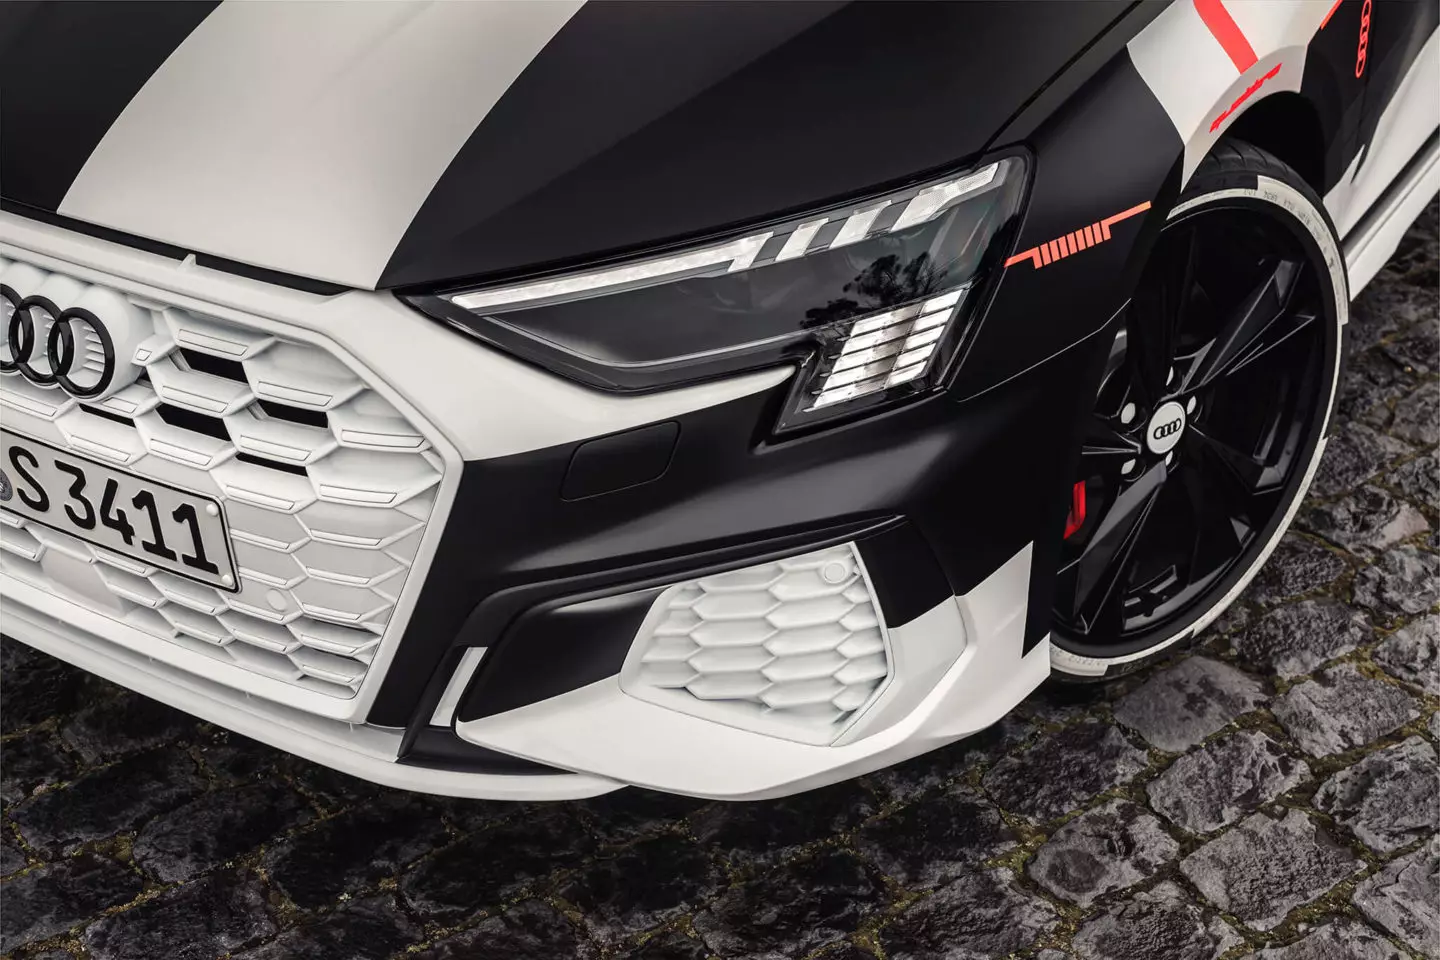 Prototyp Audi S3 2020